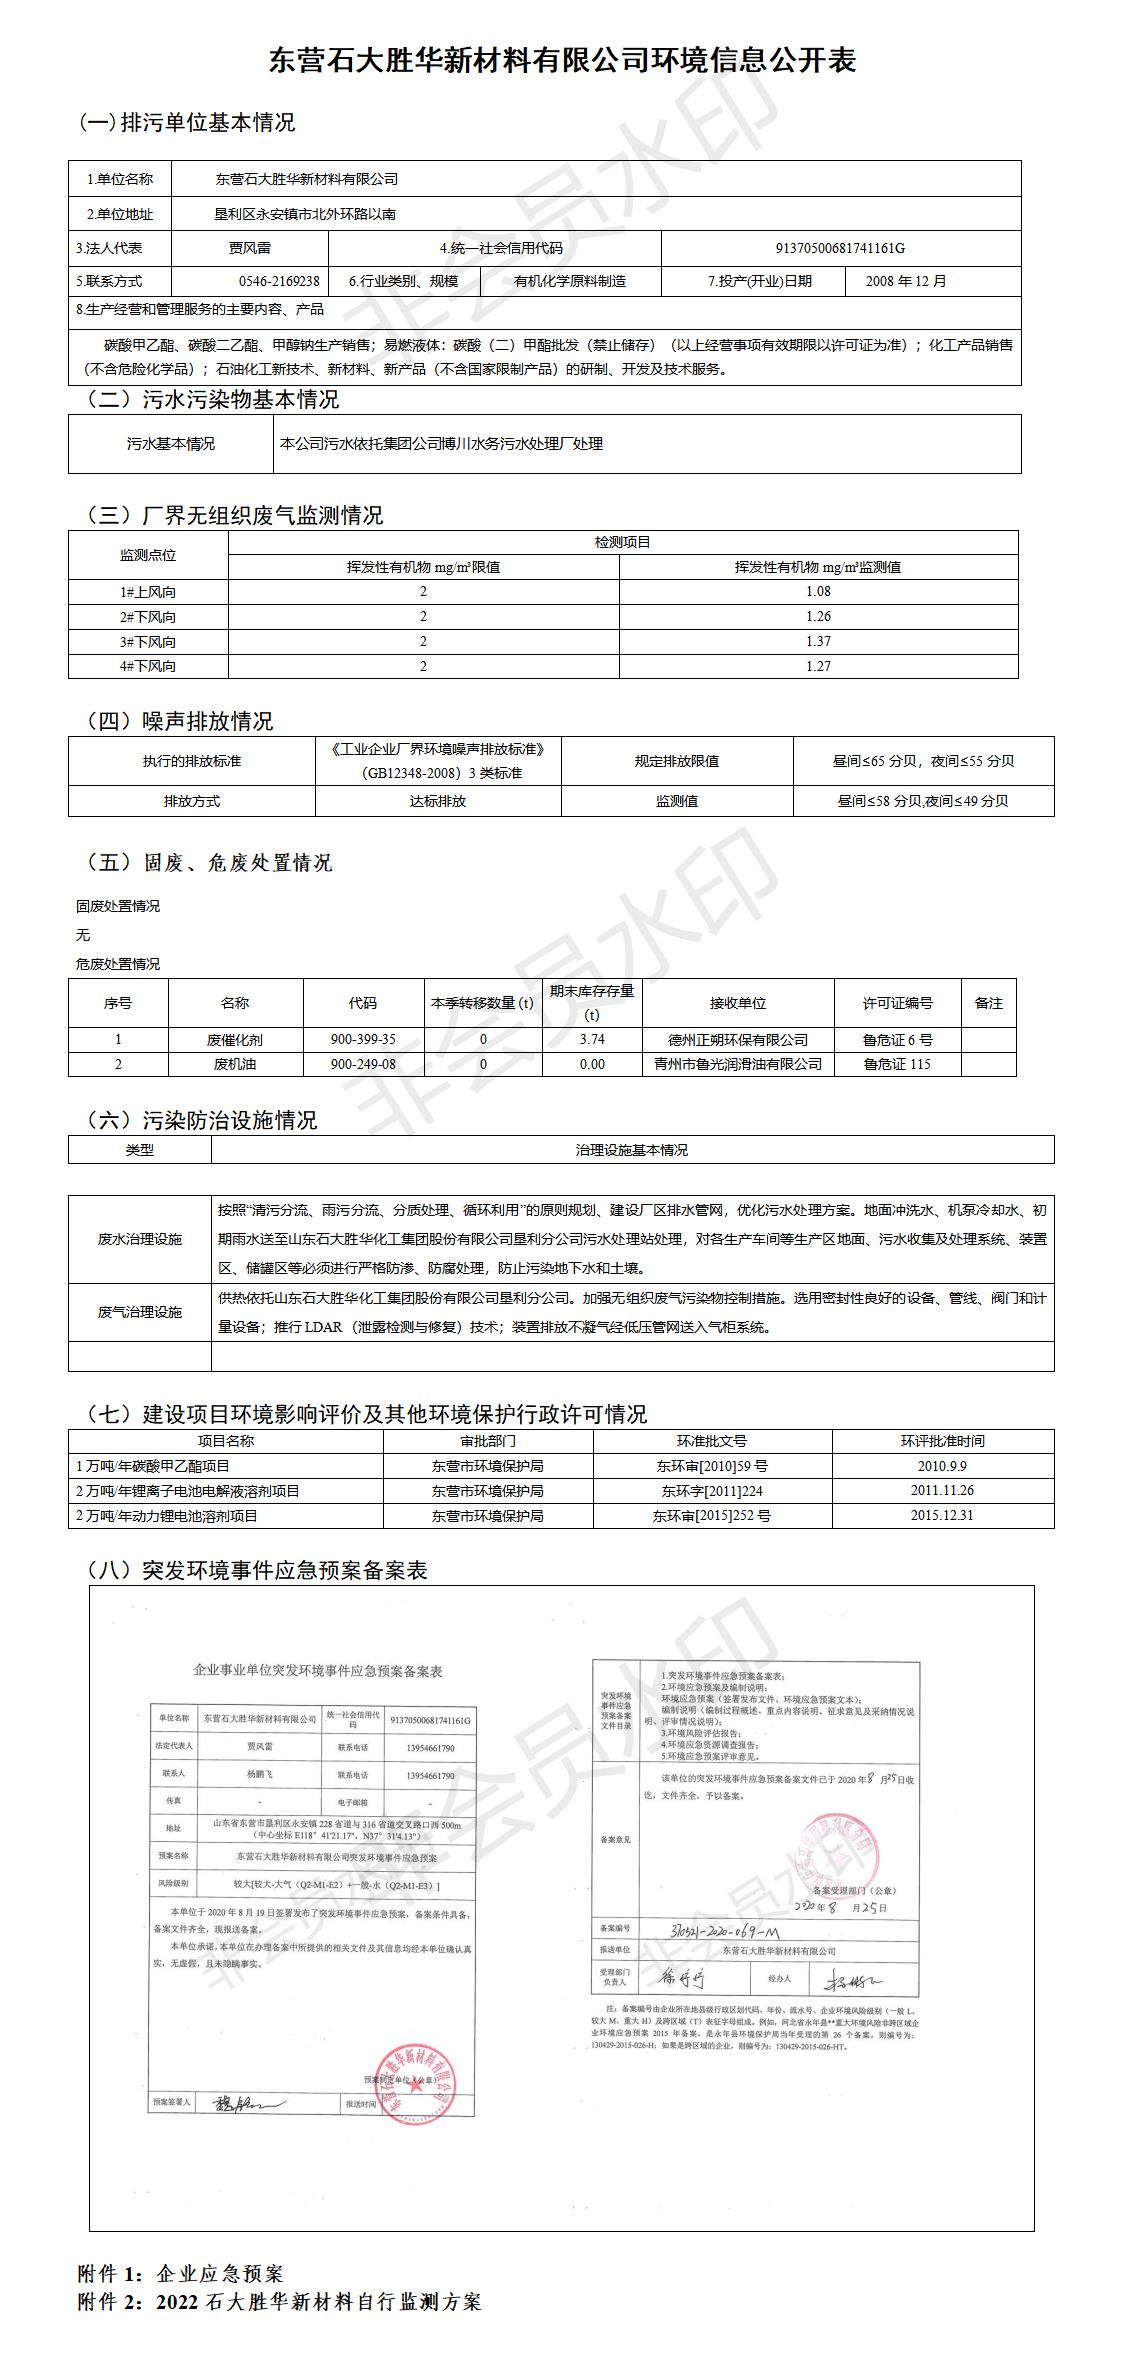 东营石大胜华新材料有限公司环境信息公开表（2022第二季度）.jpg